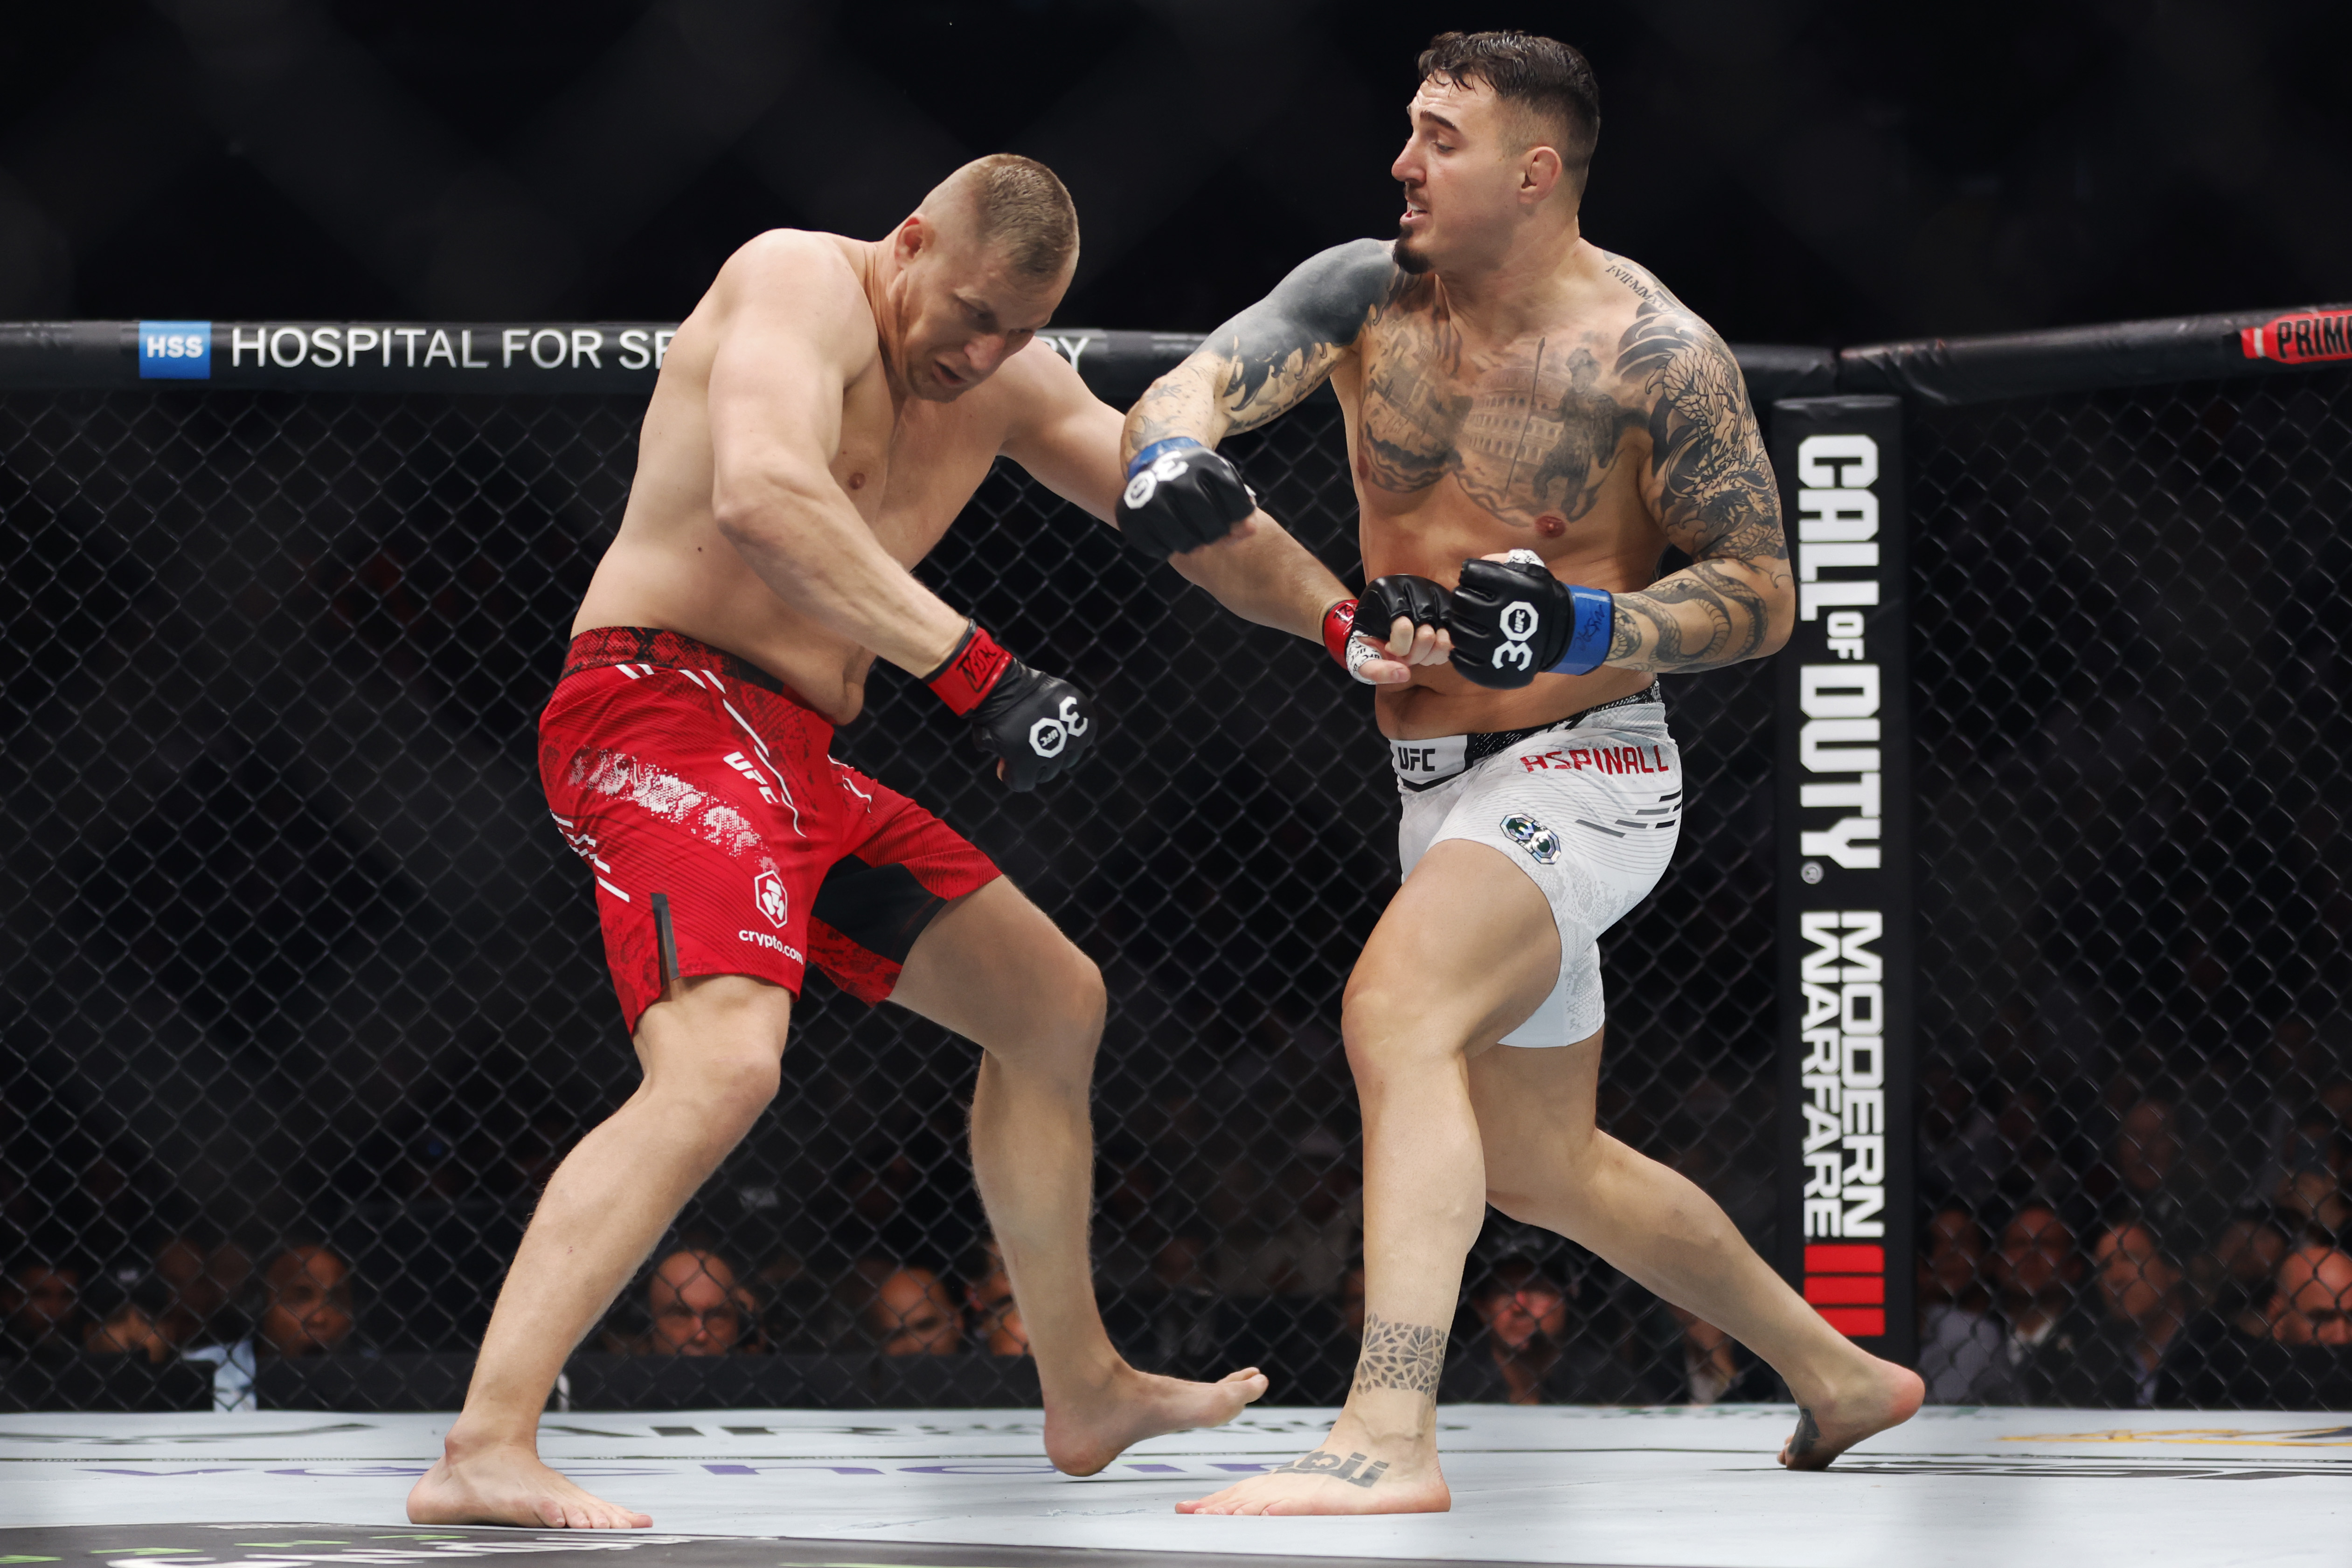 Der Brite hat Pavlovich völlig zerstört und will nun gegen eine UFC-Legende kämpfen